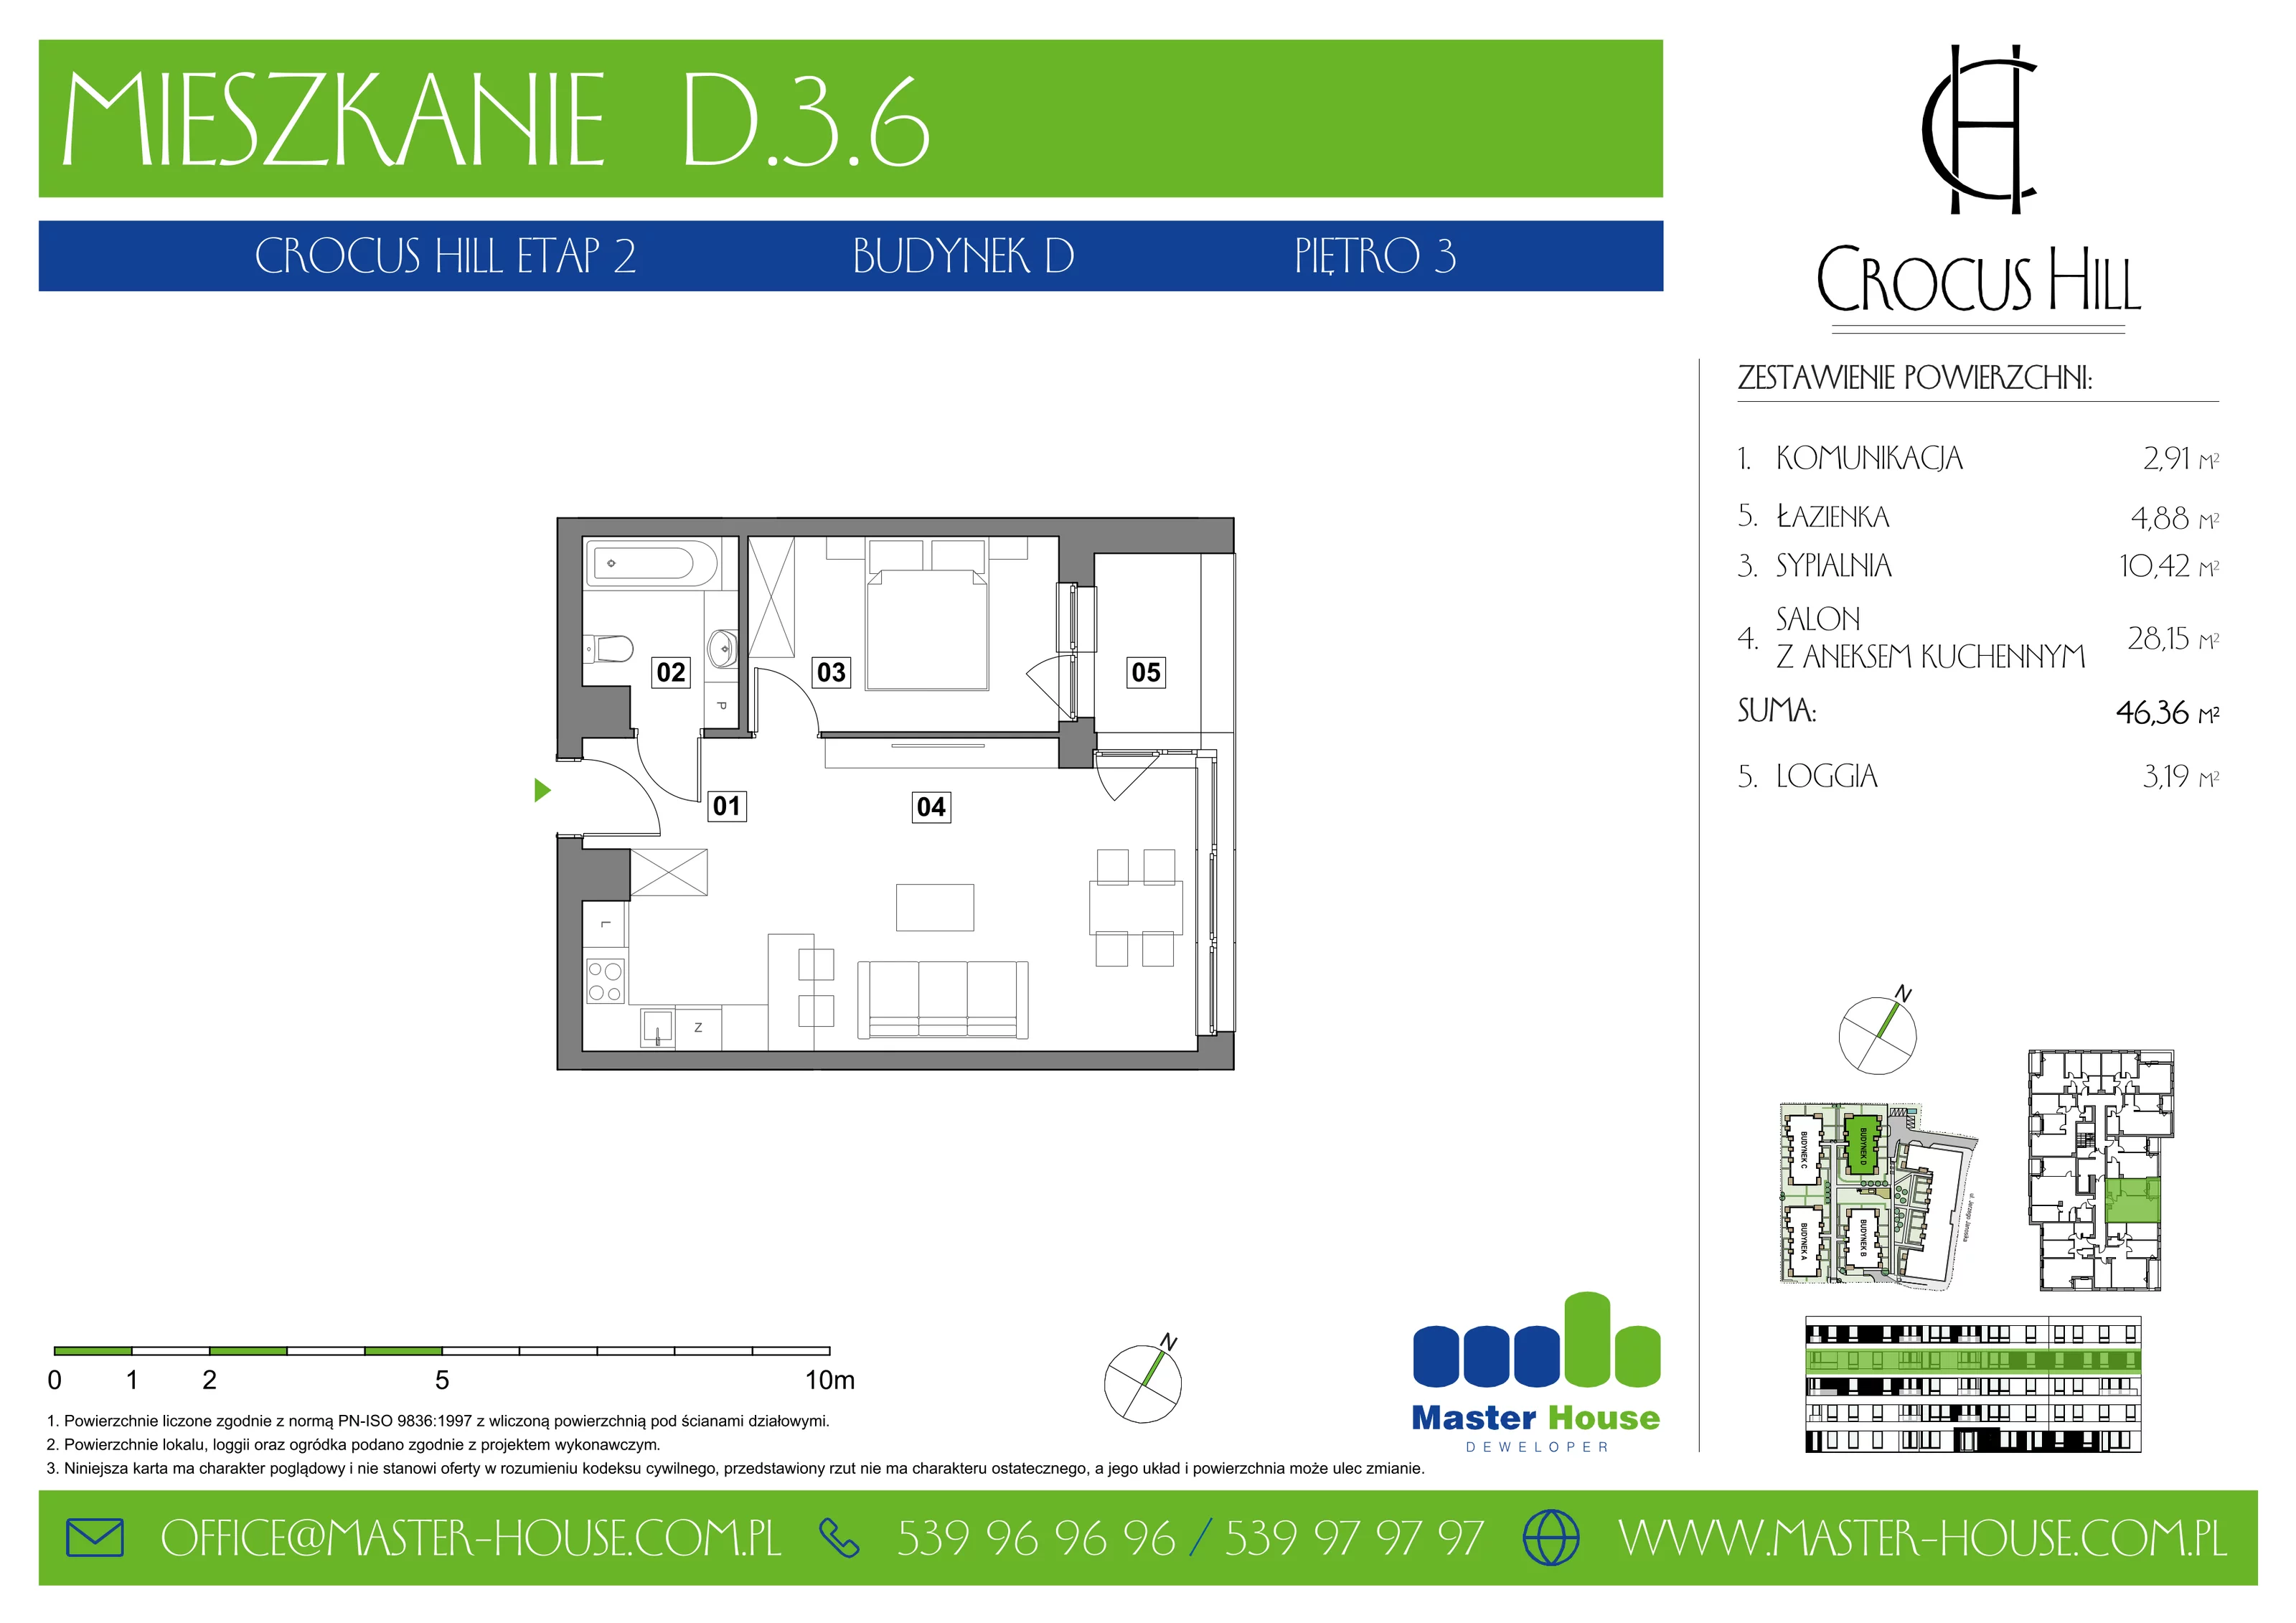 Mieszkanie 46,36 m², piętro 3, oferta nr D.3.6, Crocus Hill, Szczecin, Śródmieście, ul. Jerzego Janosika 2, 2A, 3, 3A